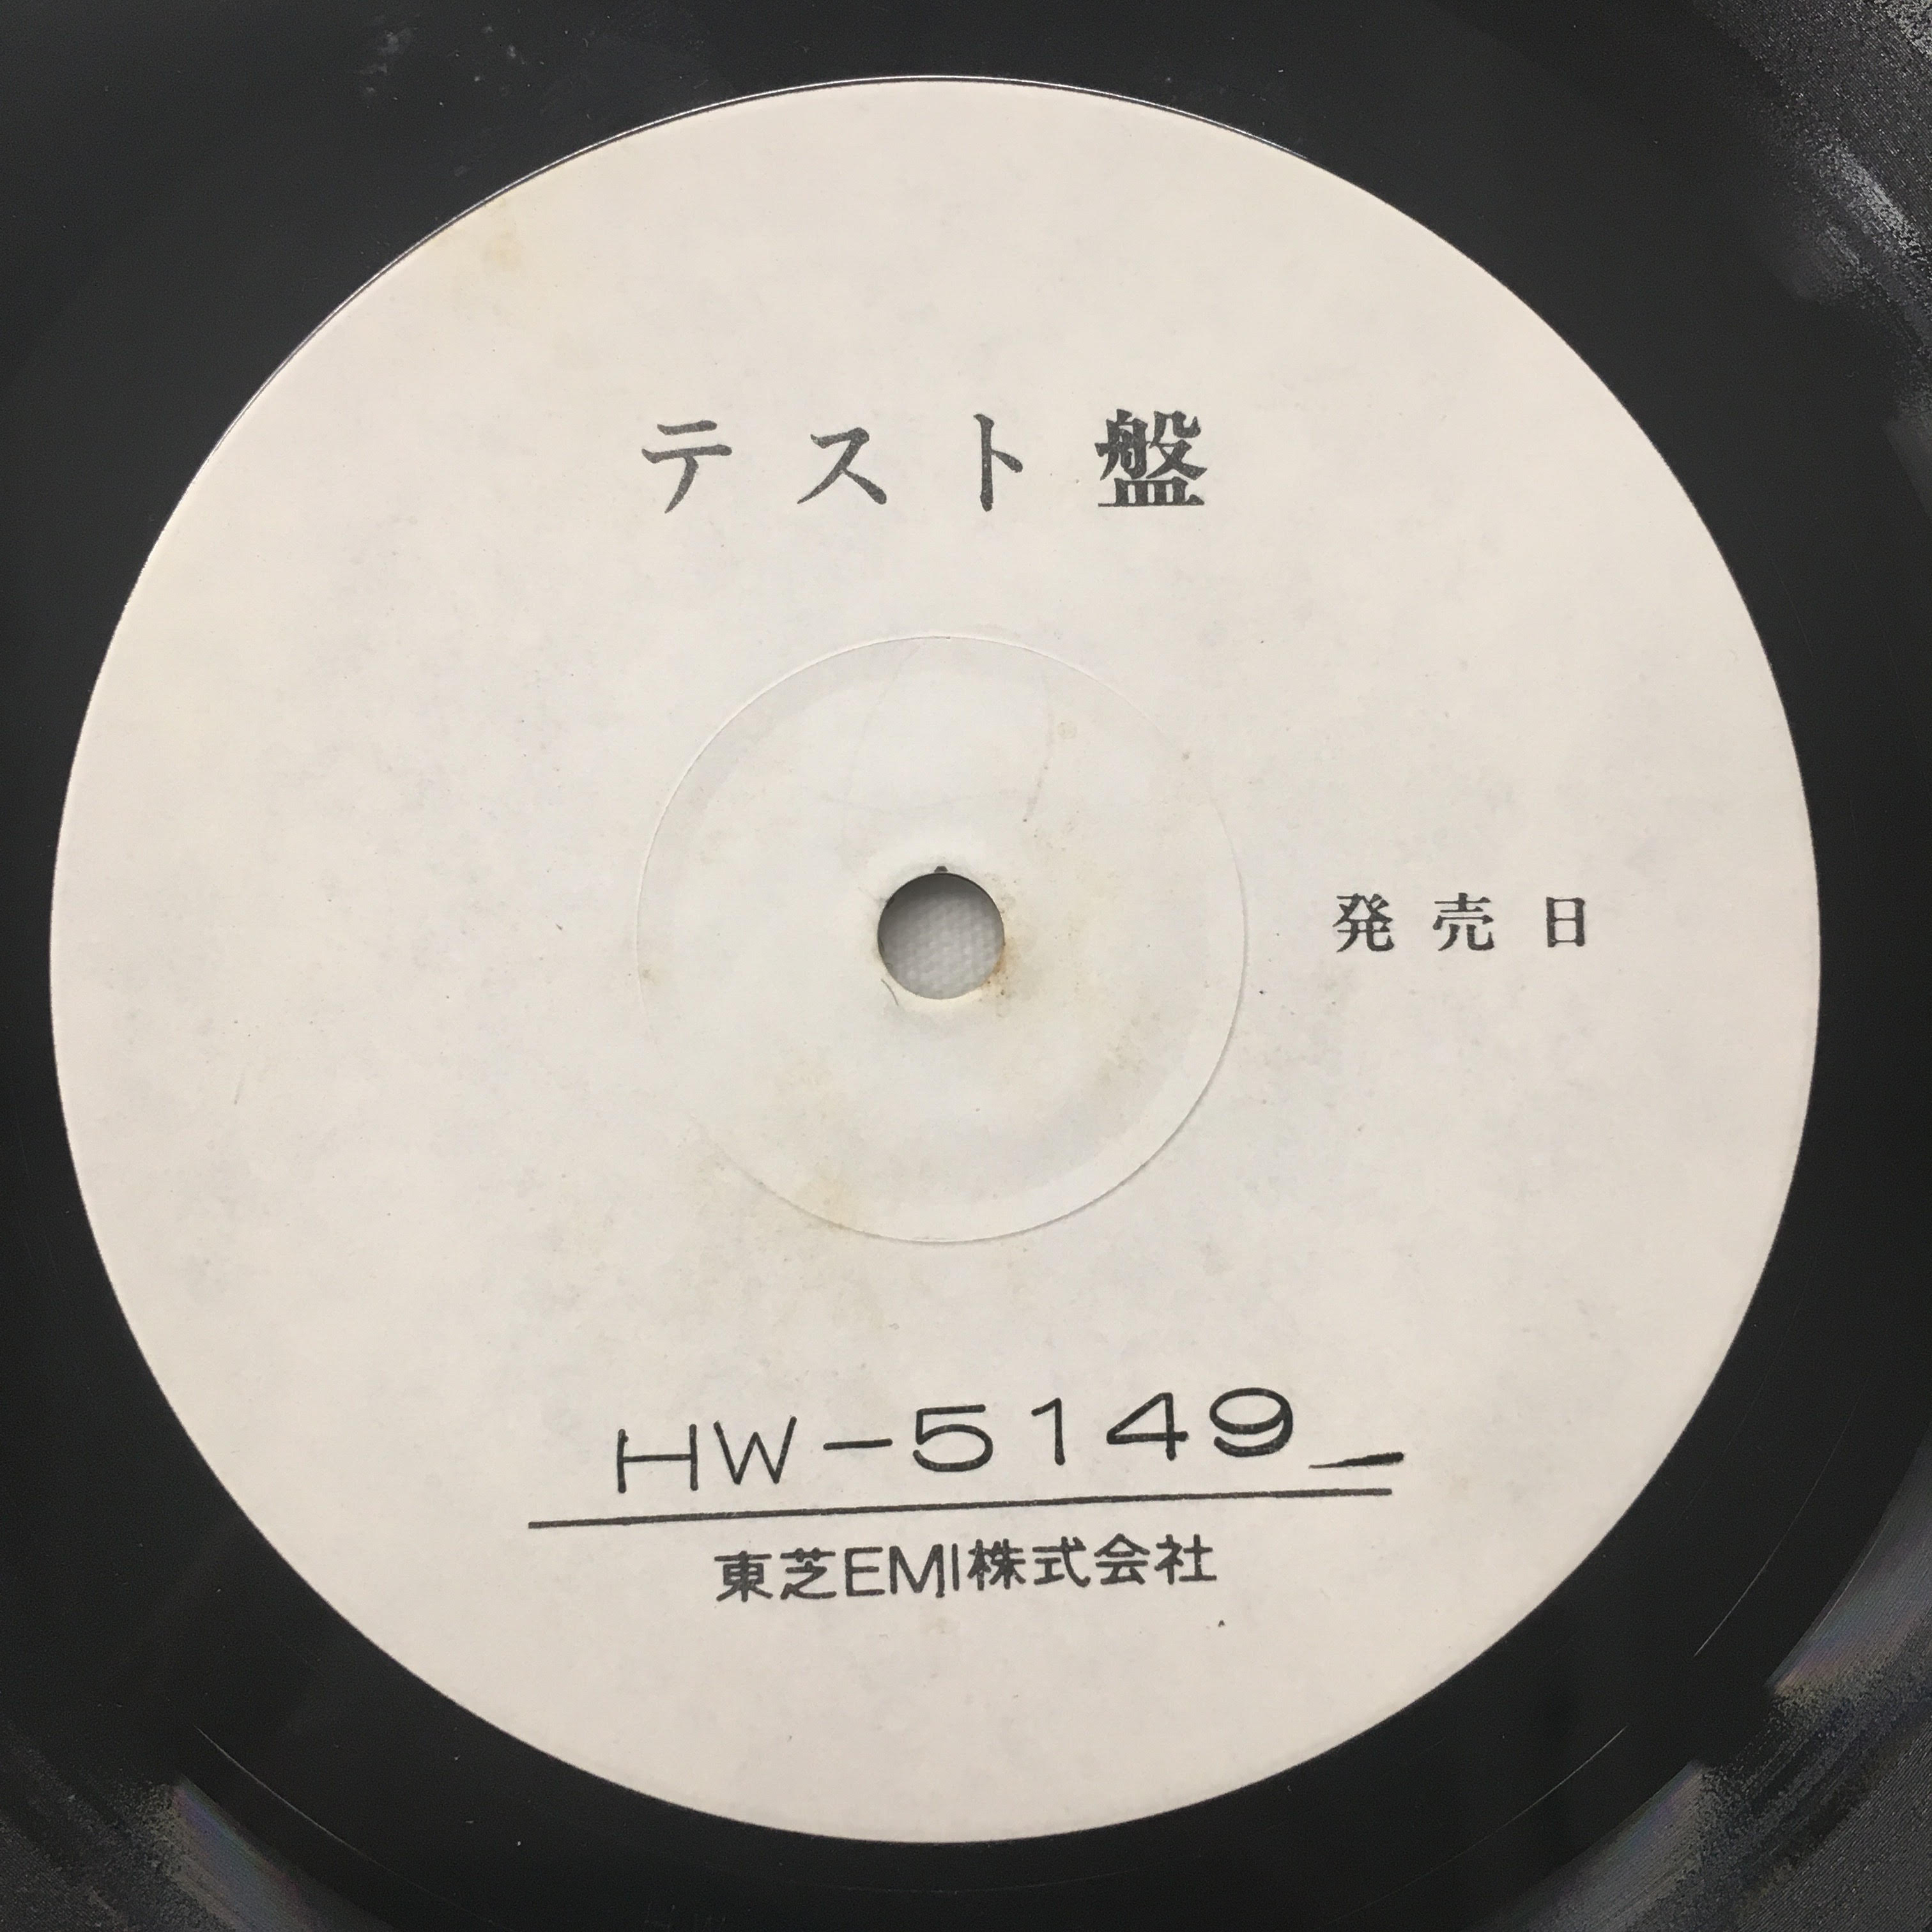 狂気 / ピンクフロイド EMI HW-5149 東芝レコードクラブ盤 - レコード